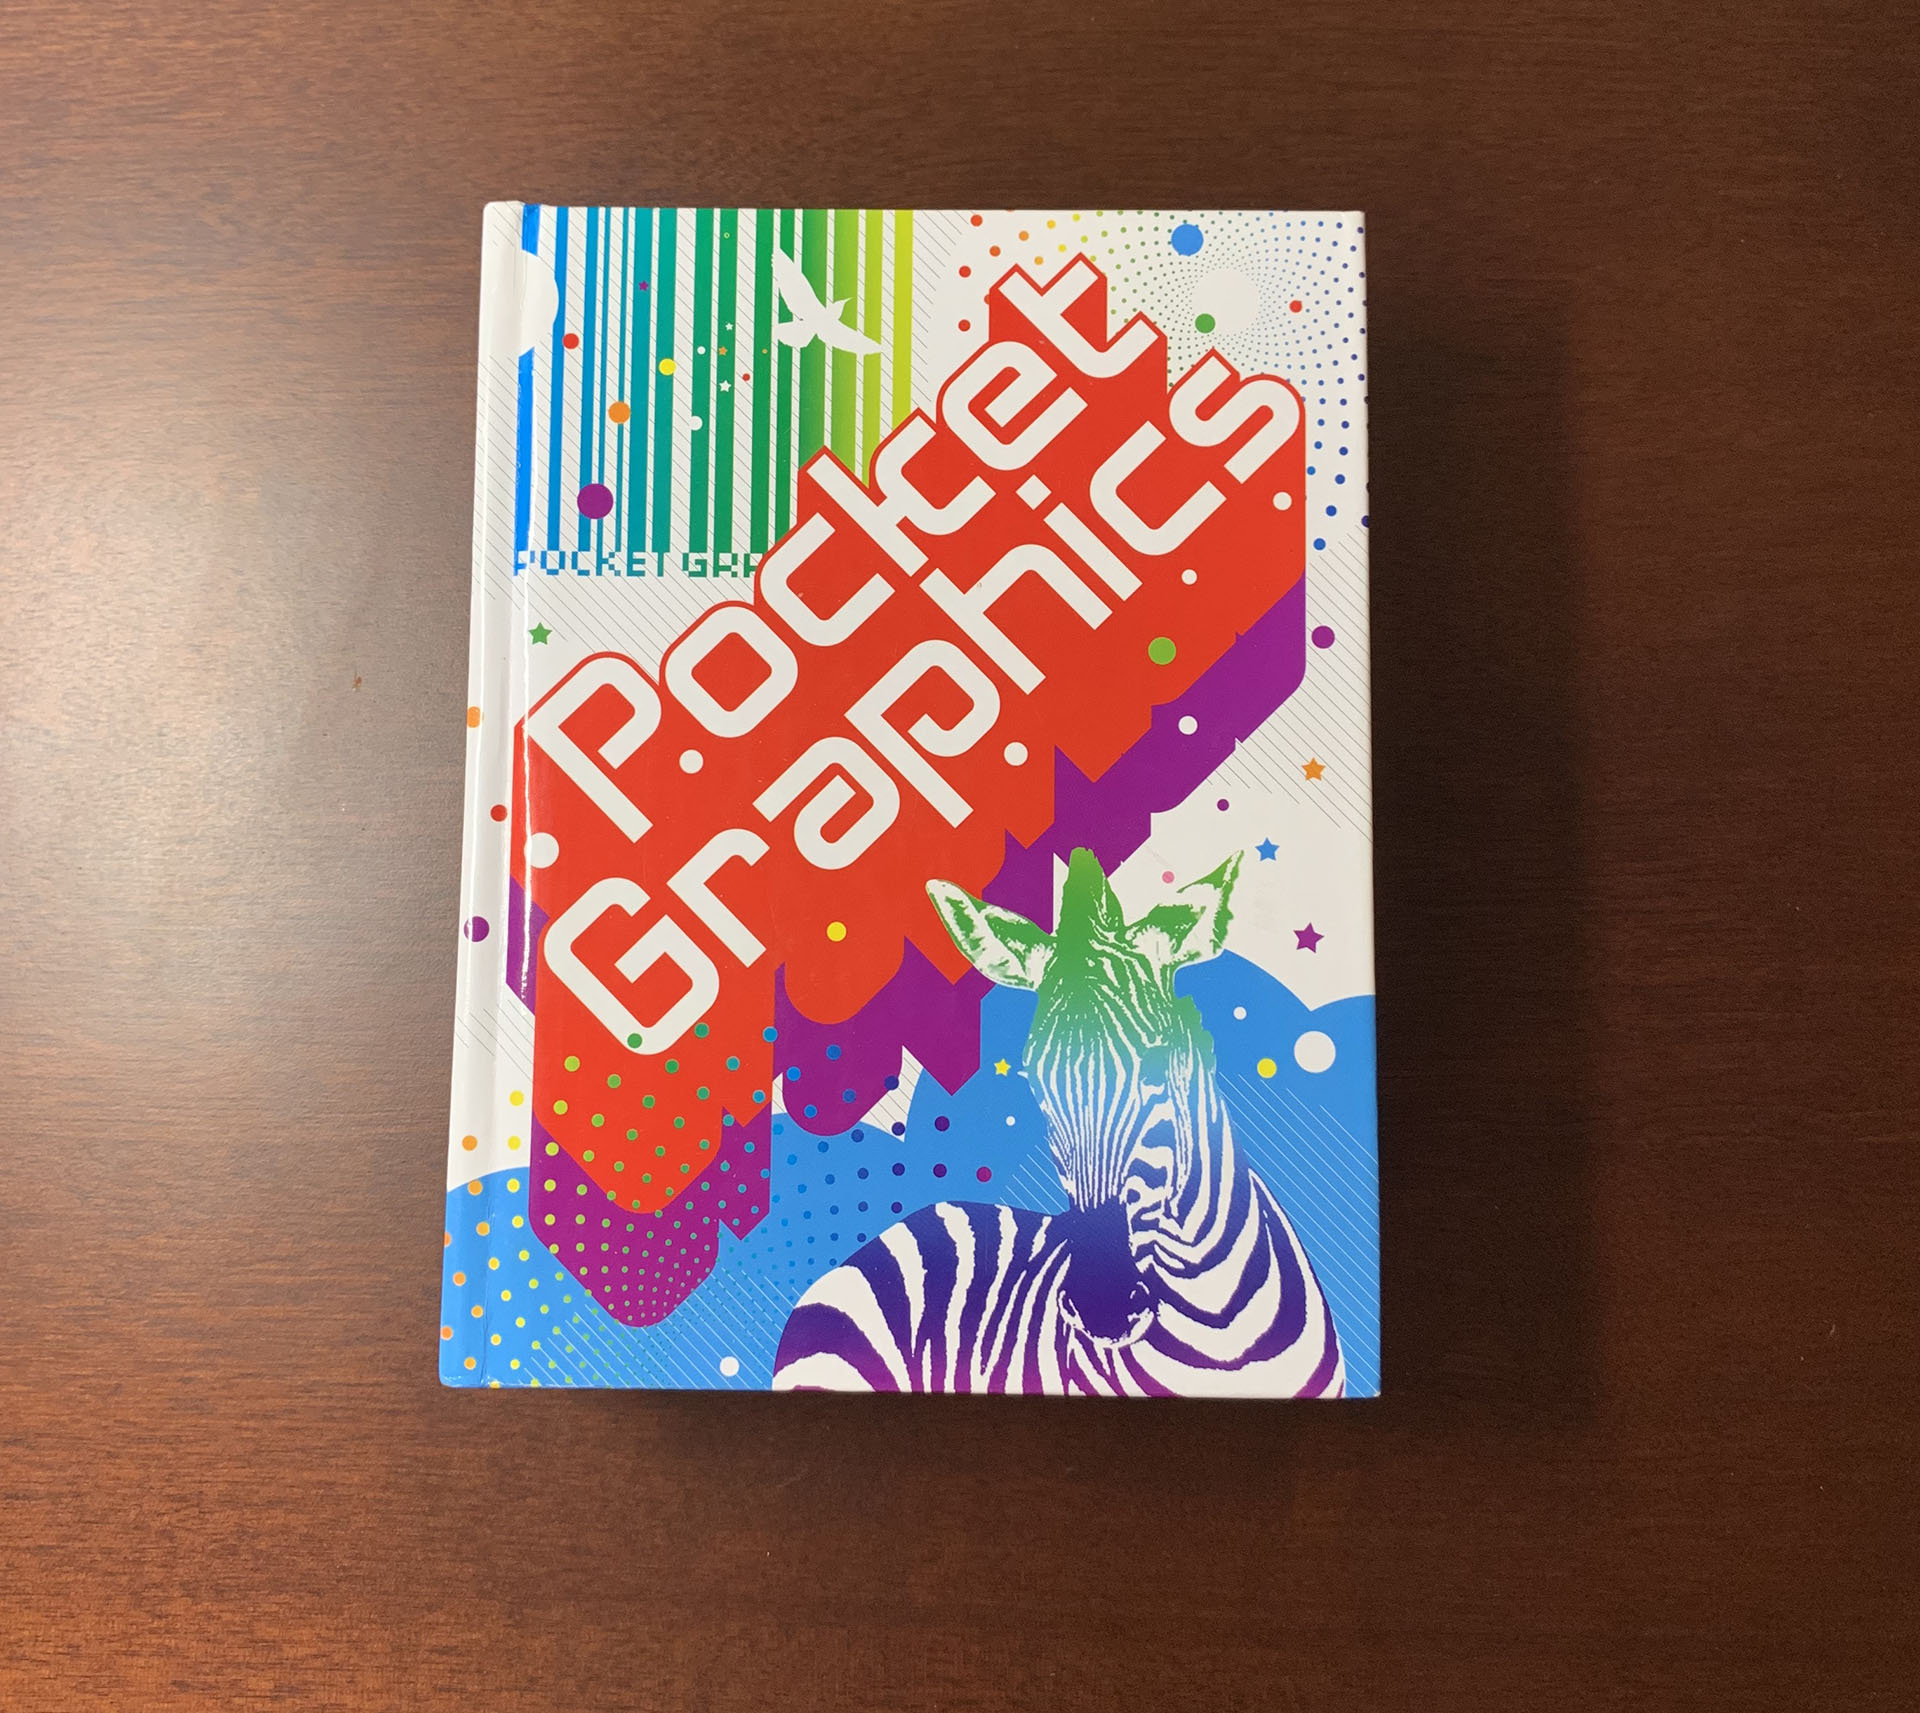 【アートブックレビュー】Pocket Graphics 小さい本にデザインアイデアの宝庫